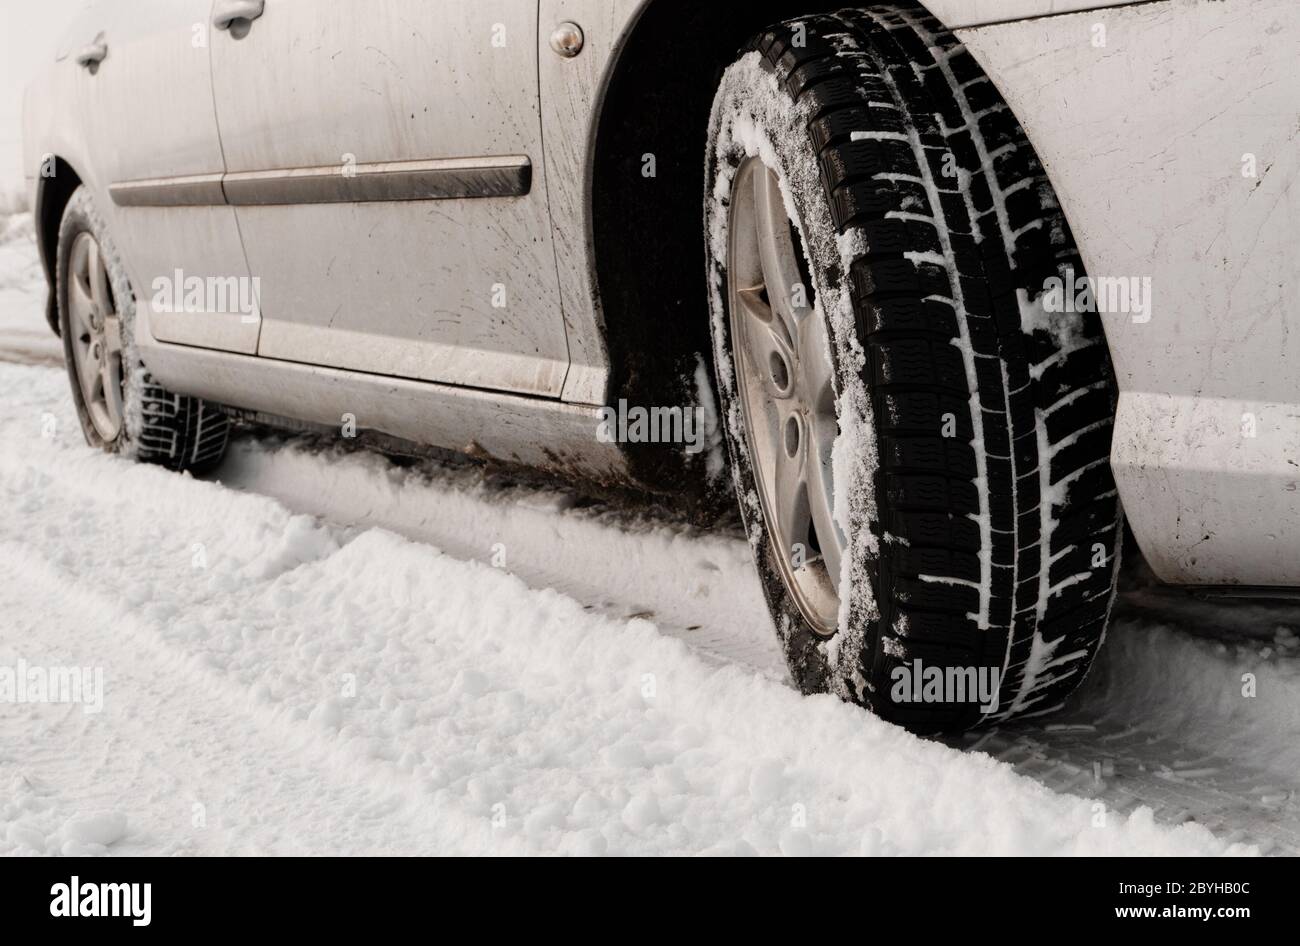 Nahaufnahme von Pkw-Reifen auf einer verschneiten Straße - Sepia-Farbton Stockfoto